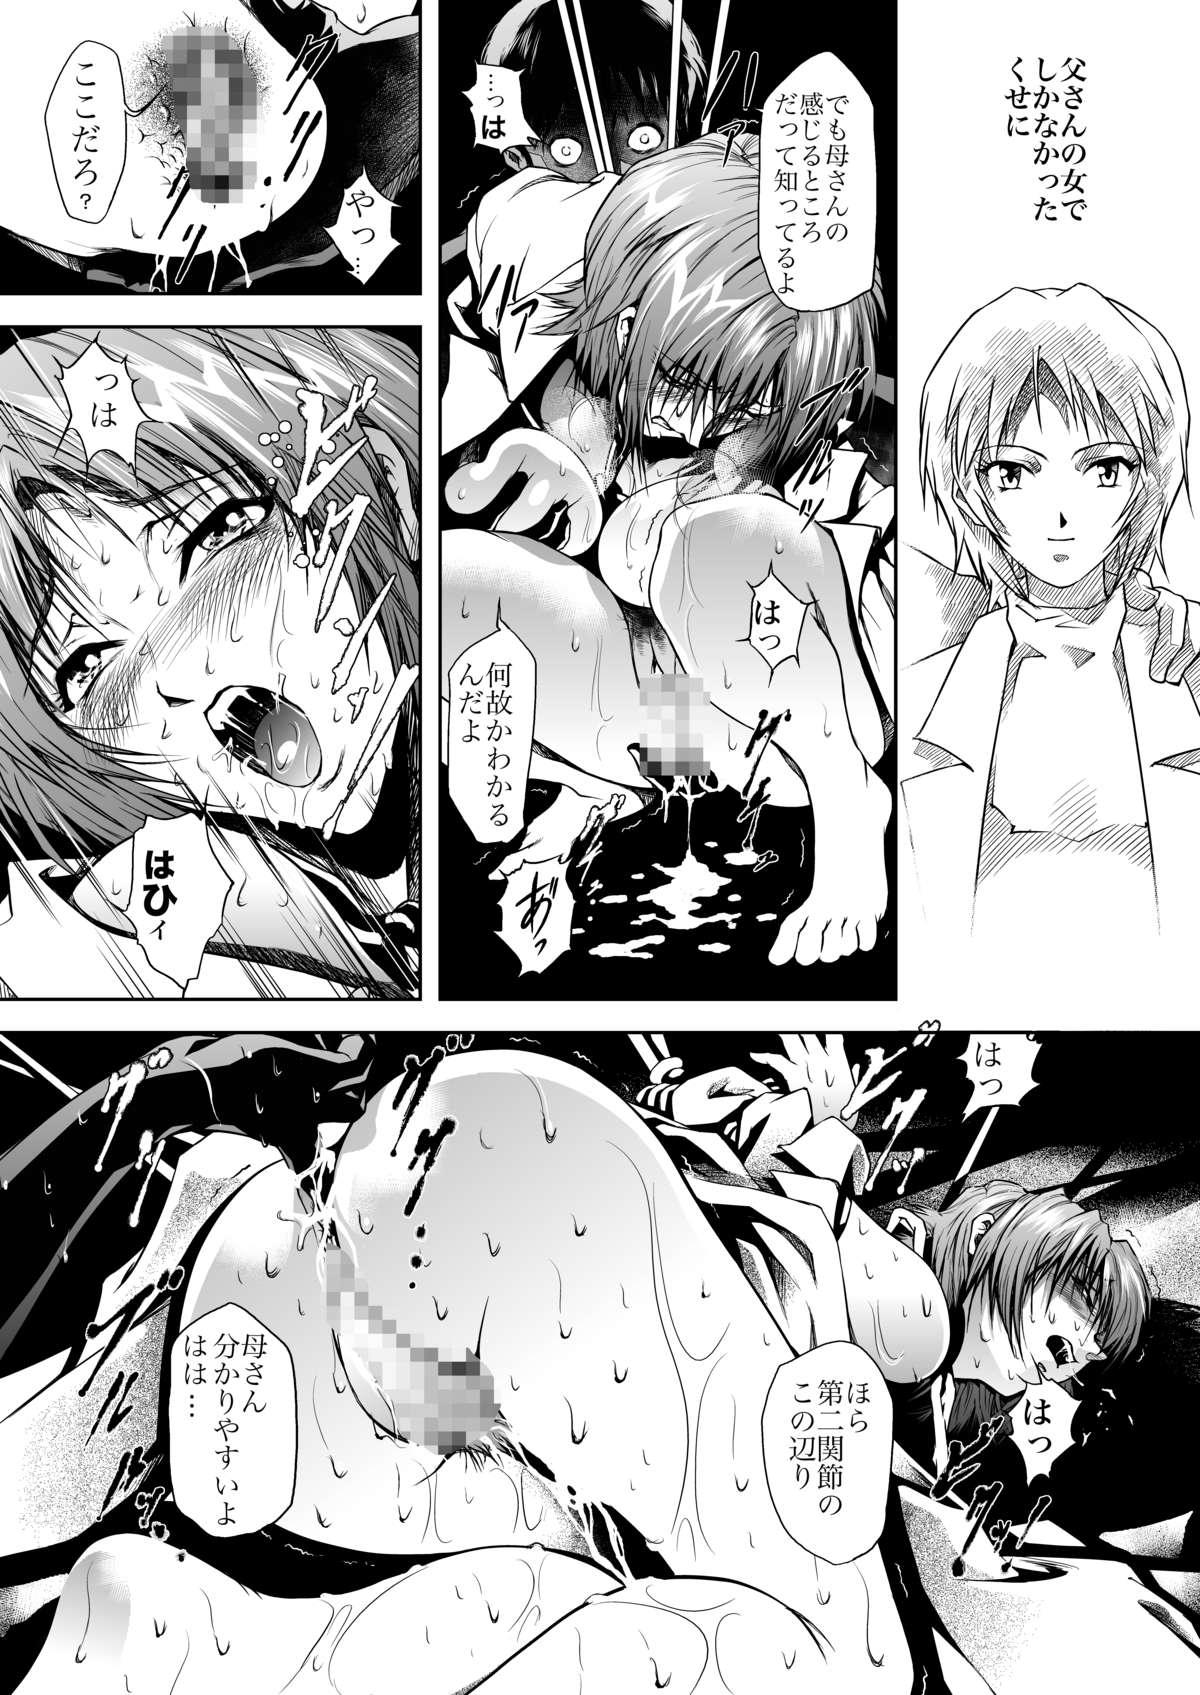 Peitos Bosei no Shinjitsu - Neon genesis evangelion Linda - Page 9